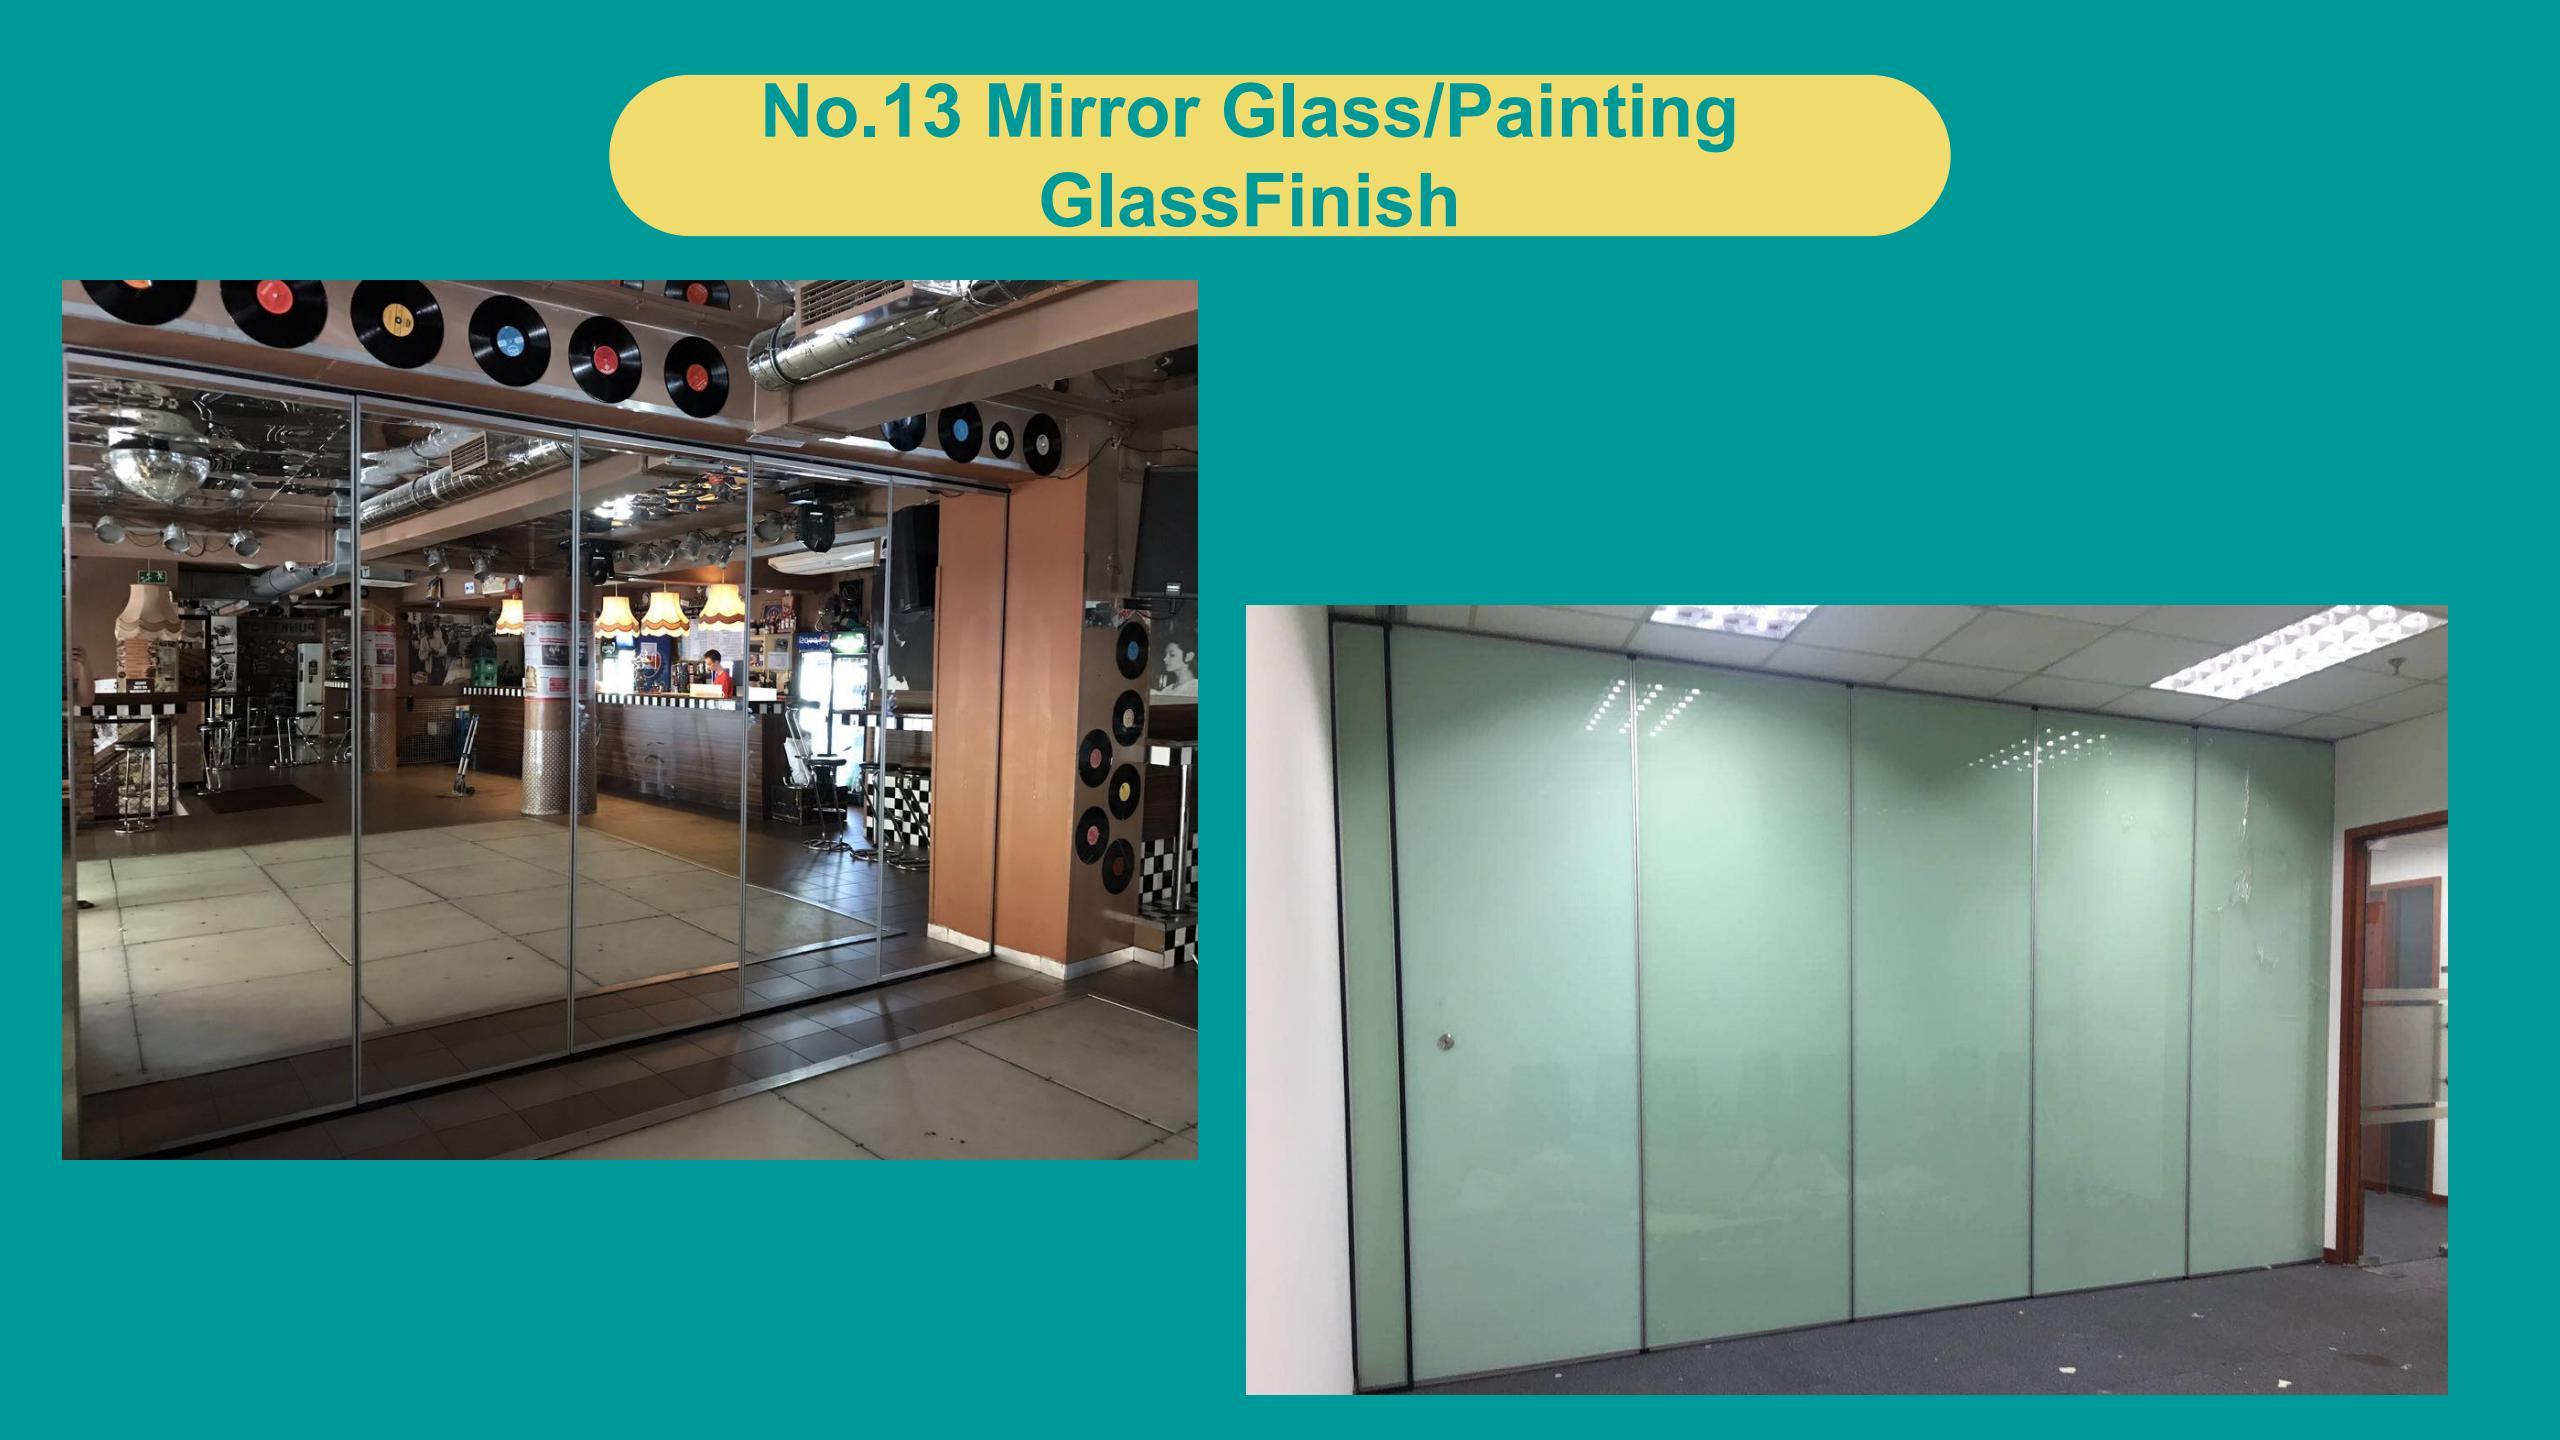 Mirror Glass/Painting GlassFinish